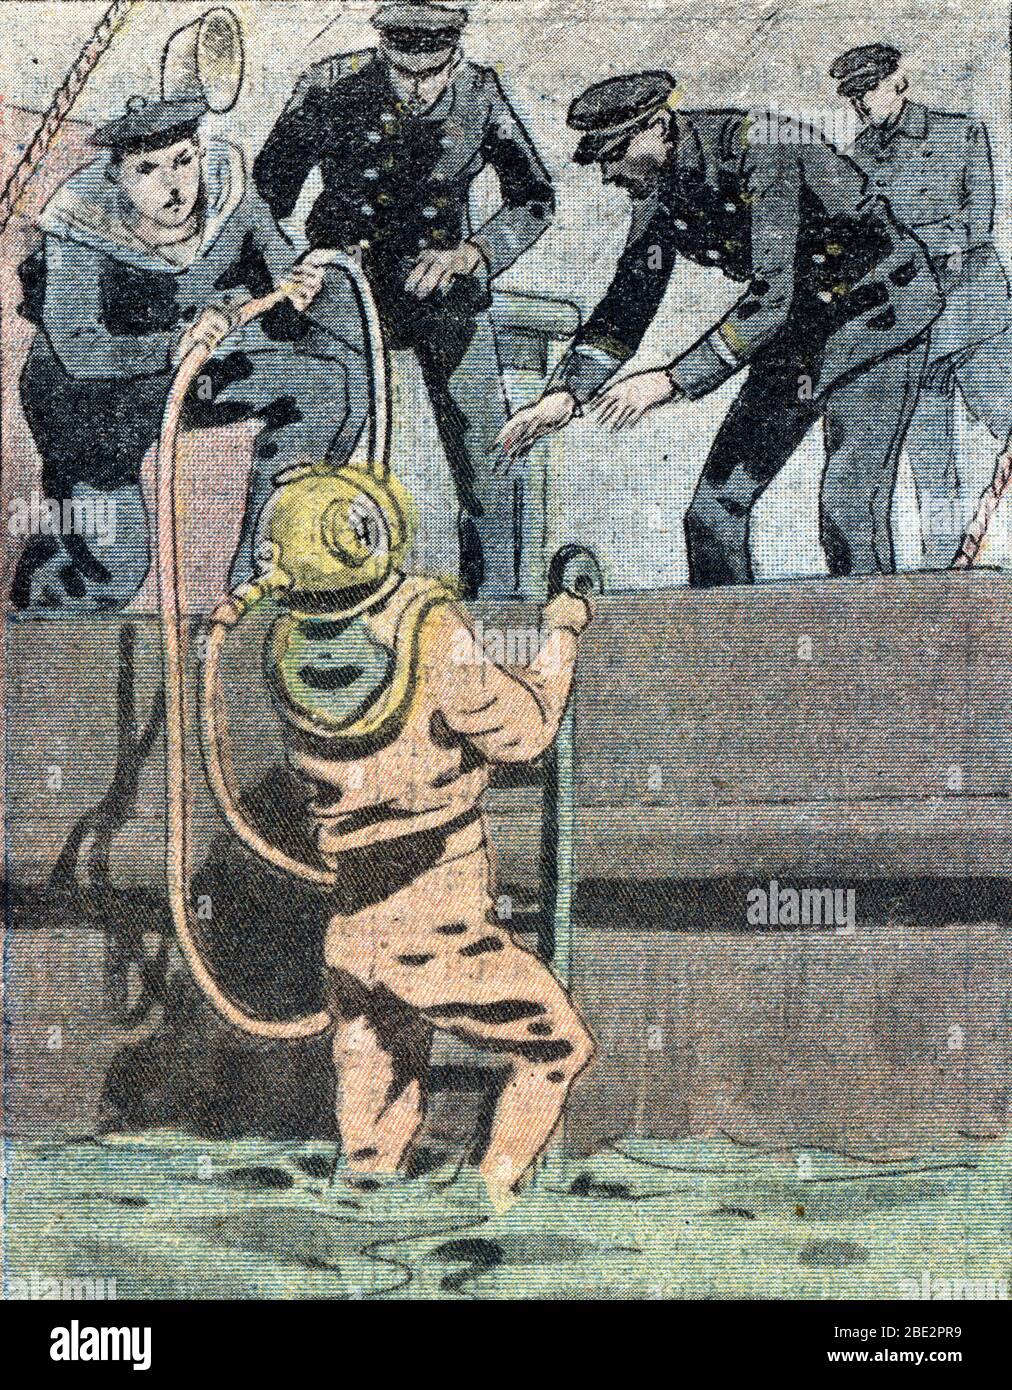 'Plongeur scaphandrier examinant la coque du navire Saint-Louis apres le naufrage du sous-marin francais le 'vendemiaire' au large des cotes du Cotent Stock Photo